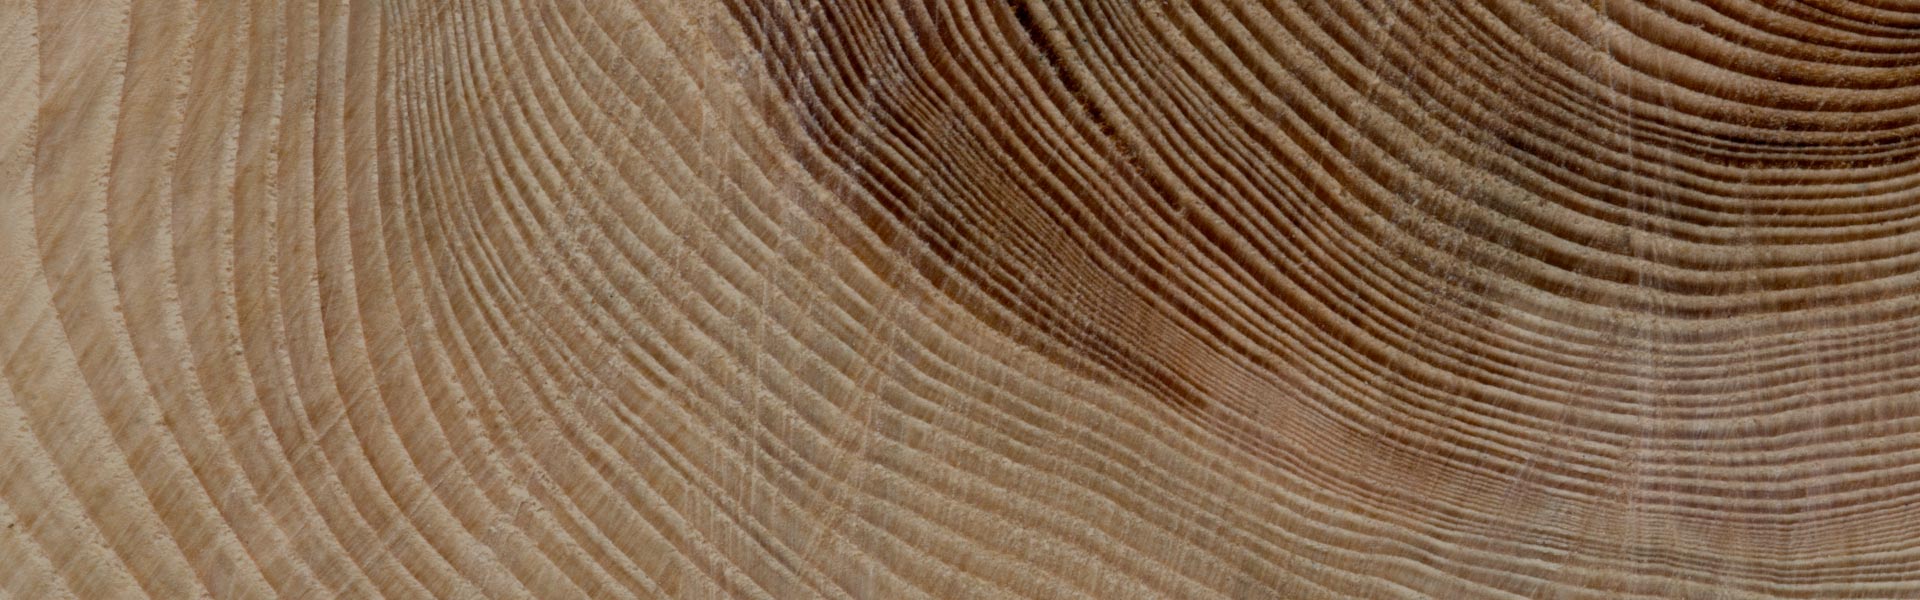 Holz – kostbarer und geschätzer Rohstoff